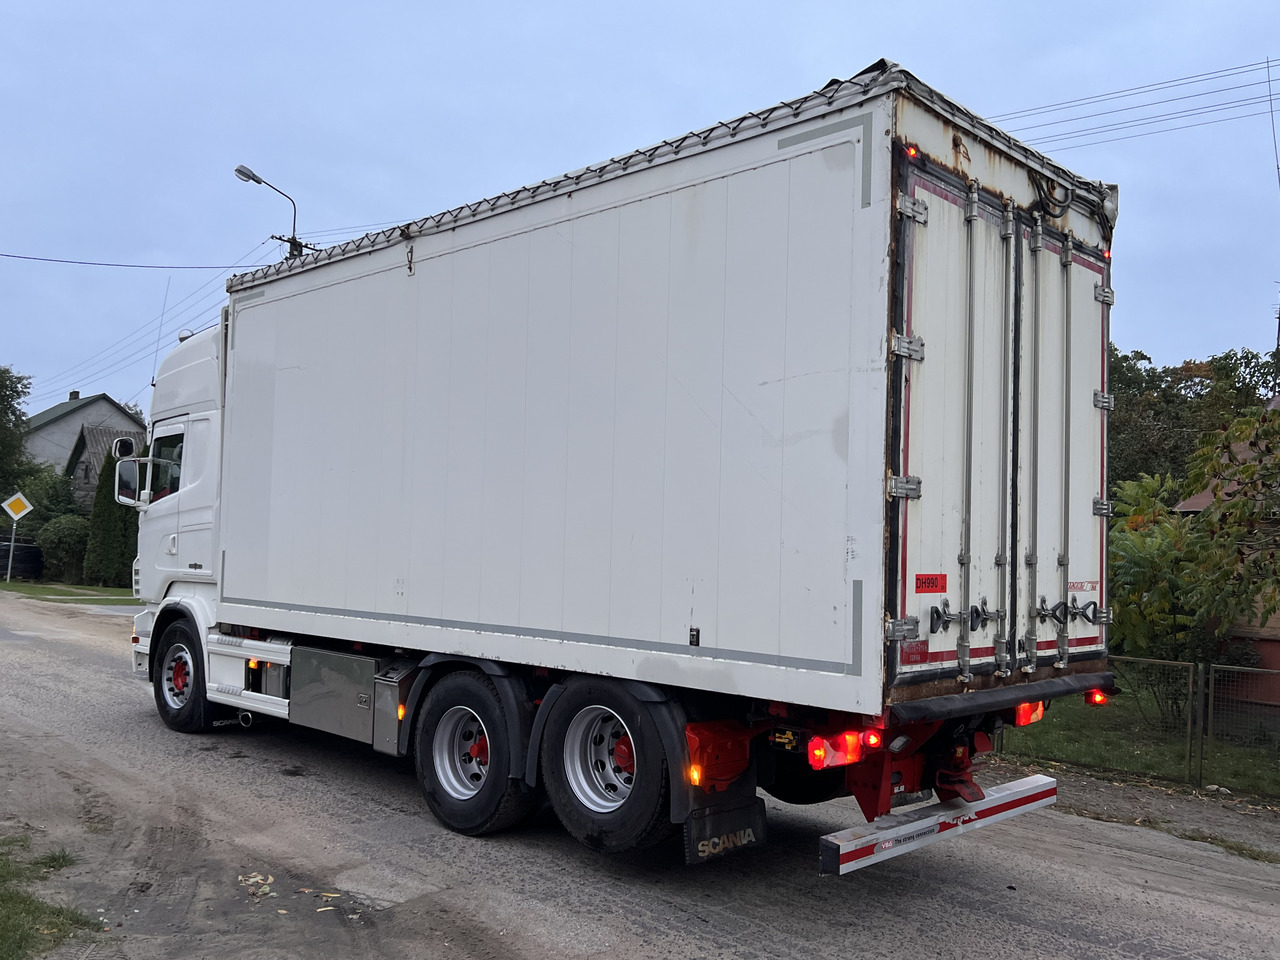 Kamion-šasija SCANIA R560 / Chassis / Perfect condition / 18000 kg payload: slika Kamion-šasija SCANIA R560 / Chassis / Perfect condition / 18000 kg payload